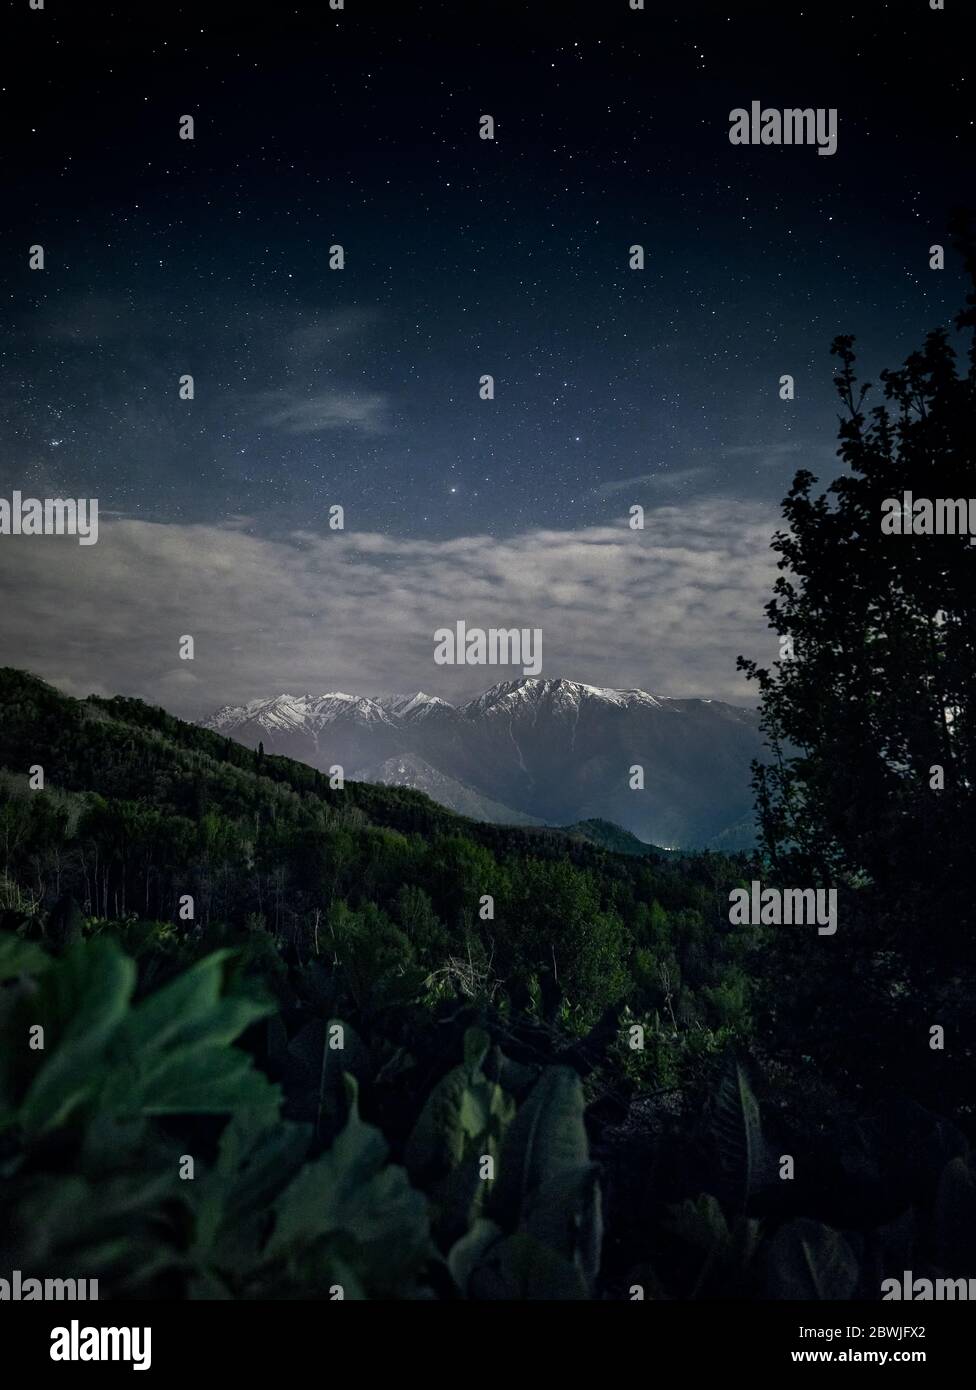 Schöne Landschaft von weißen Bergspitzen und üppiges Grün im Vordergrund gegen Nachthimmel voller Sterne. Astrofotografie und Langzeitbelichtung. Stockfoto